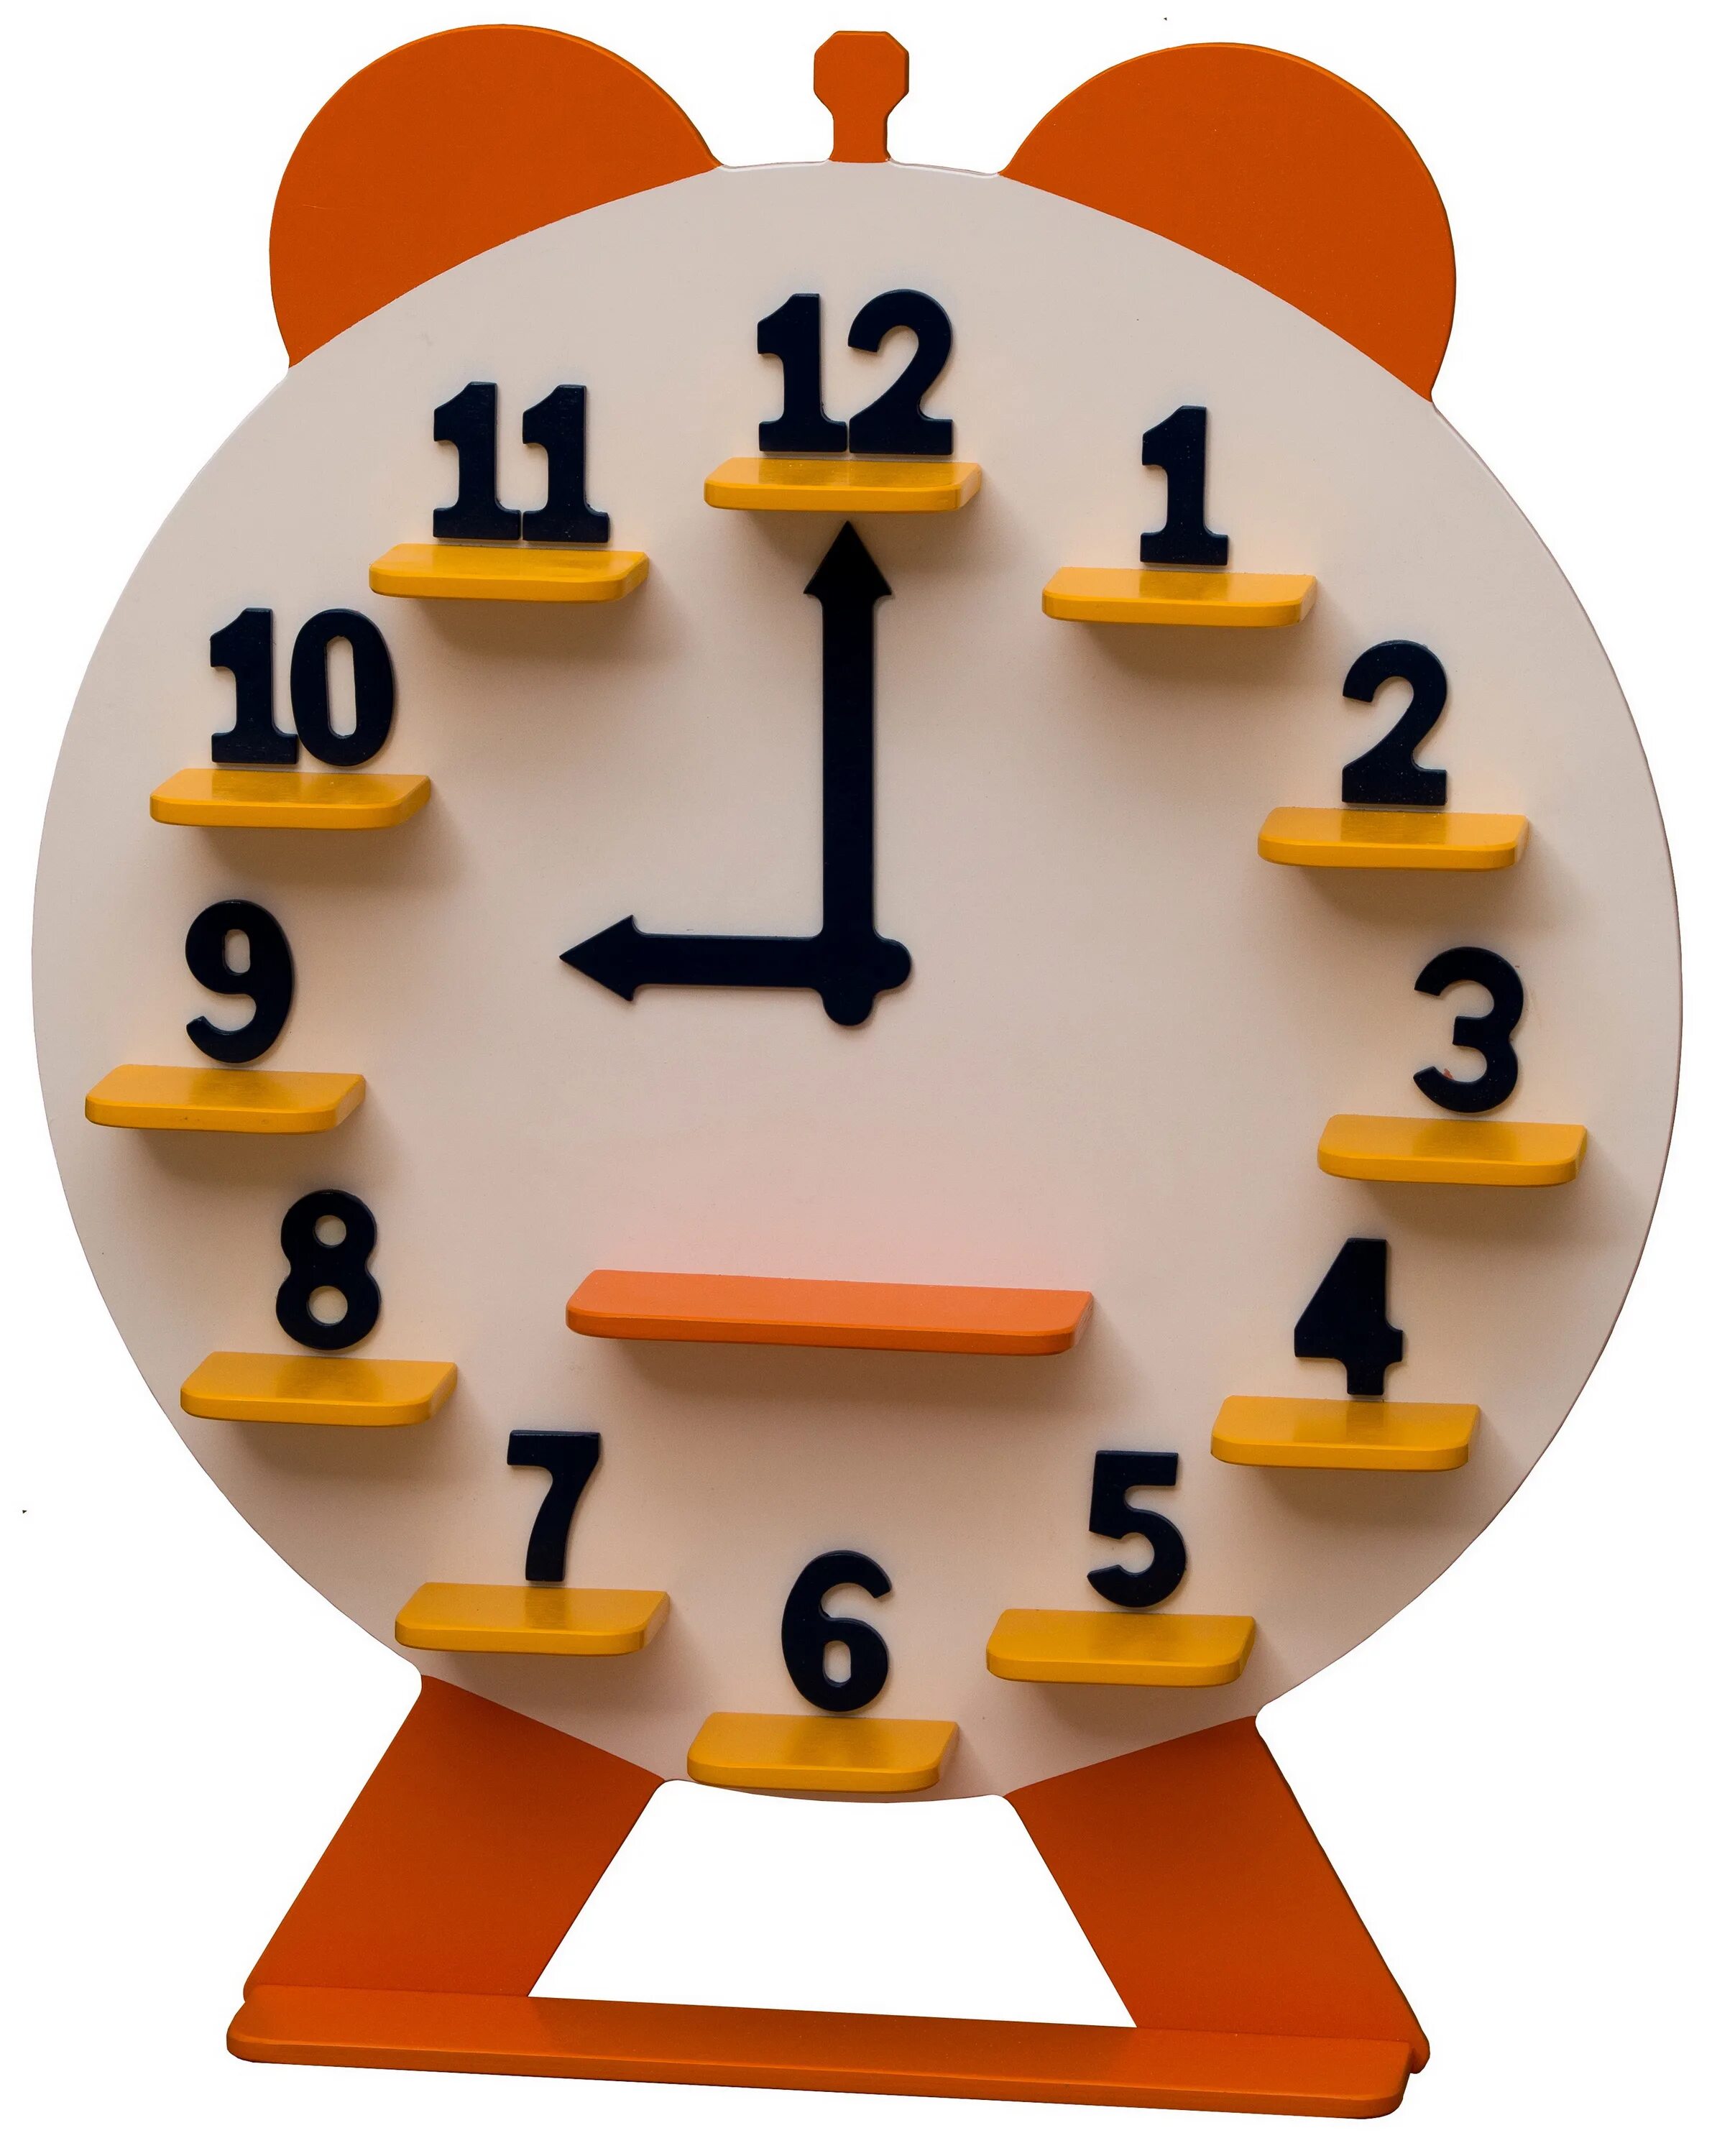 Сделай часы тусклее. Часы из картона. Часы из картона для детей. Модель часов из картона. Поделка часы из картона.